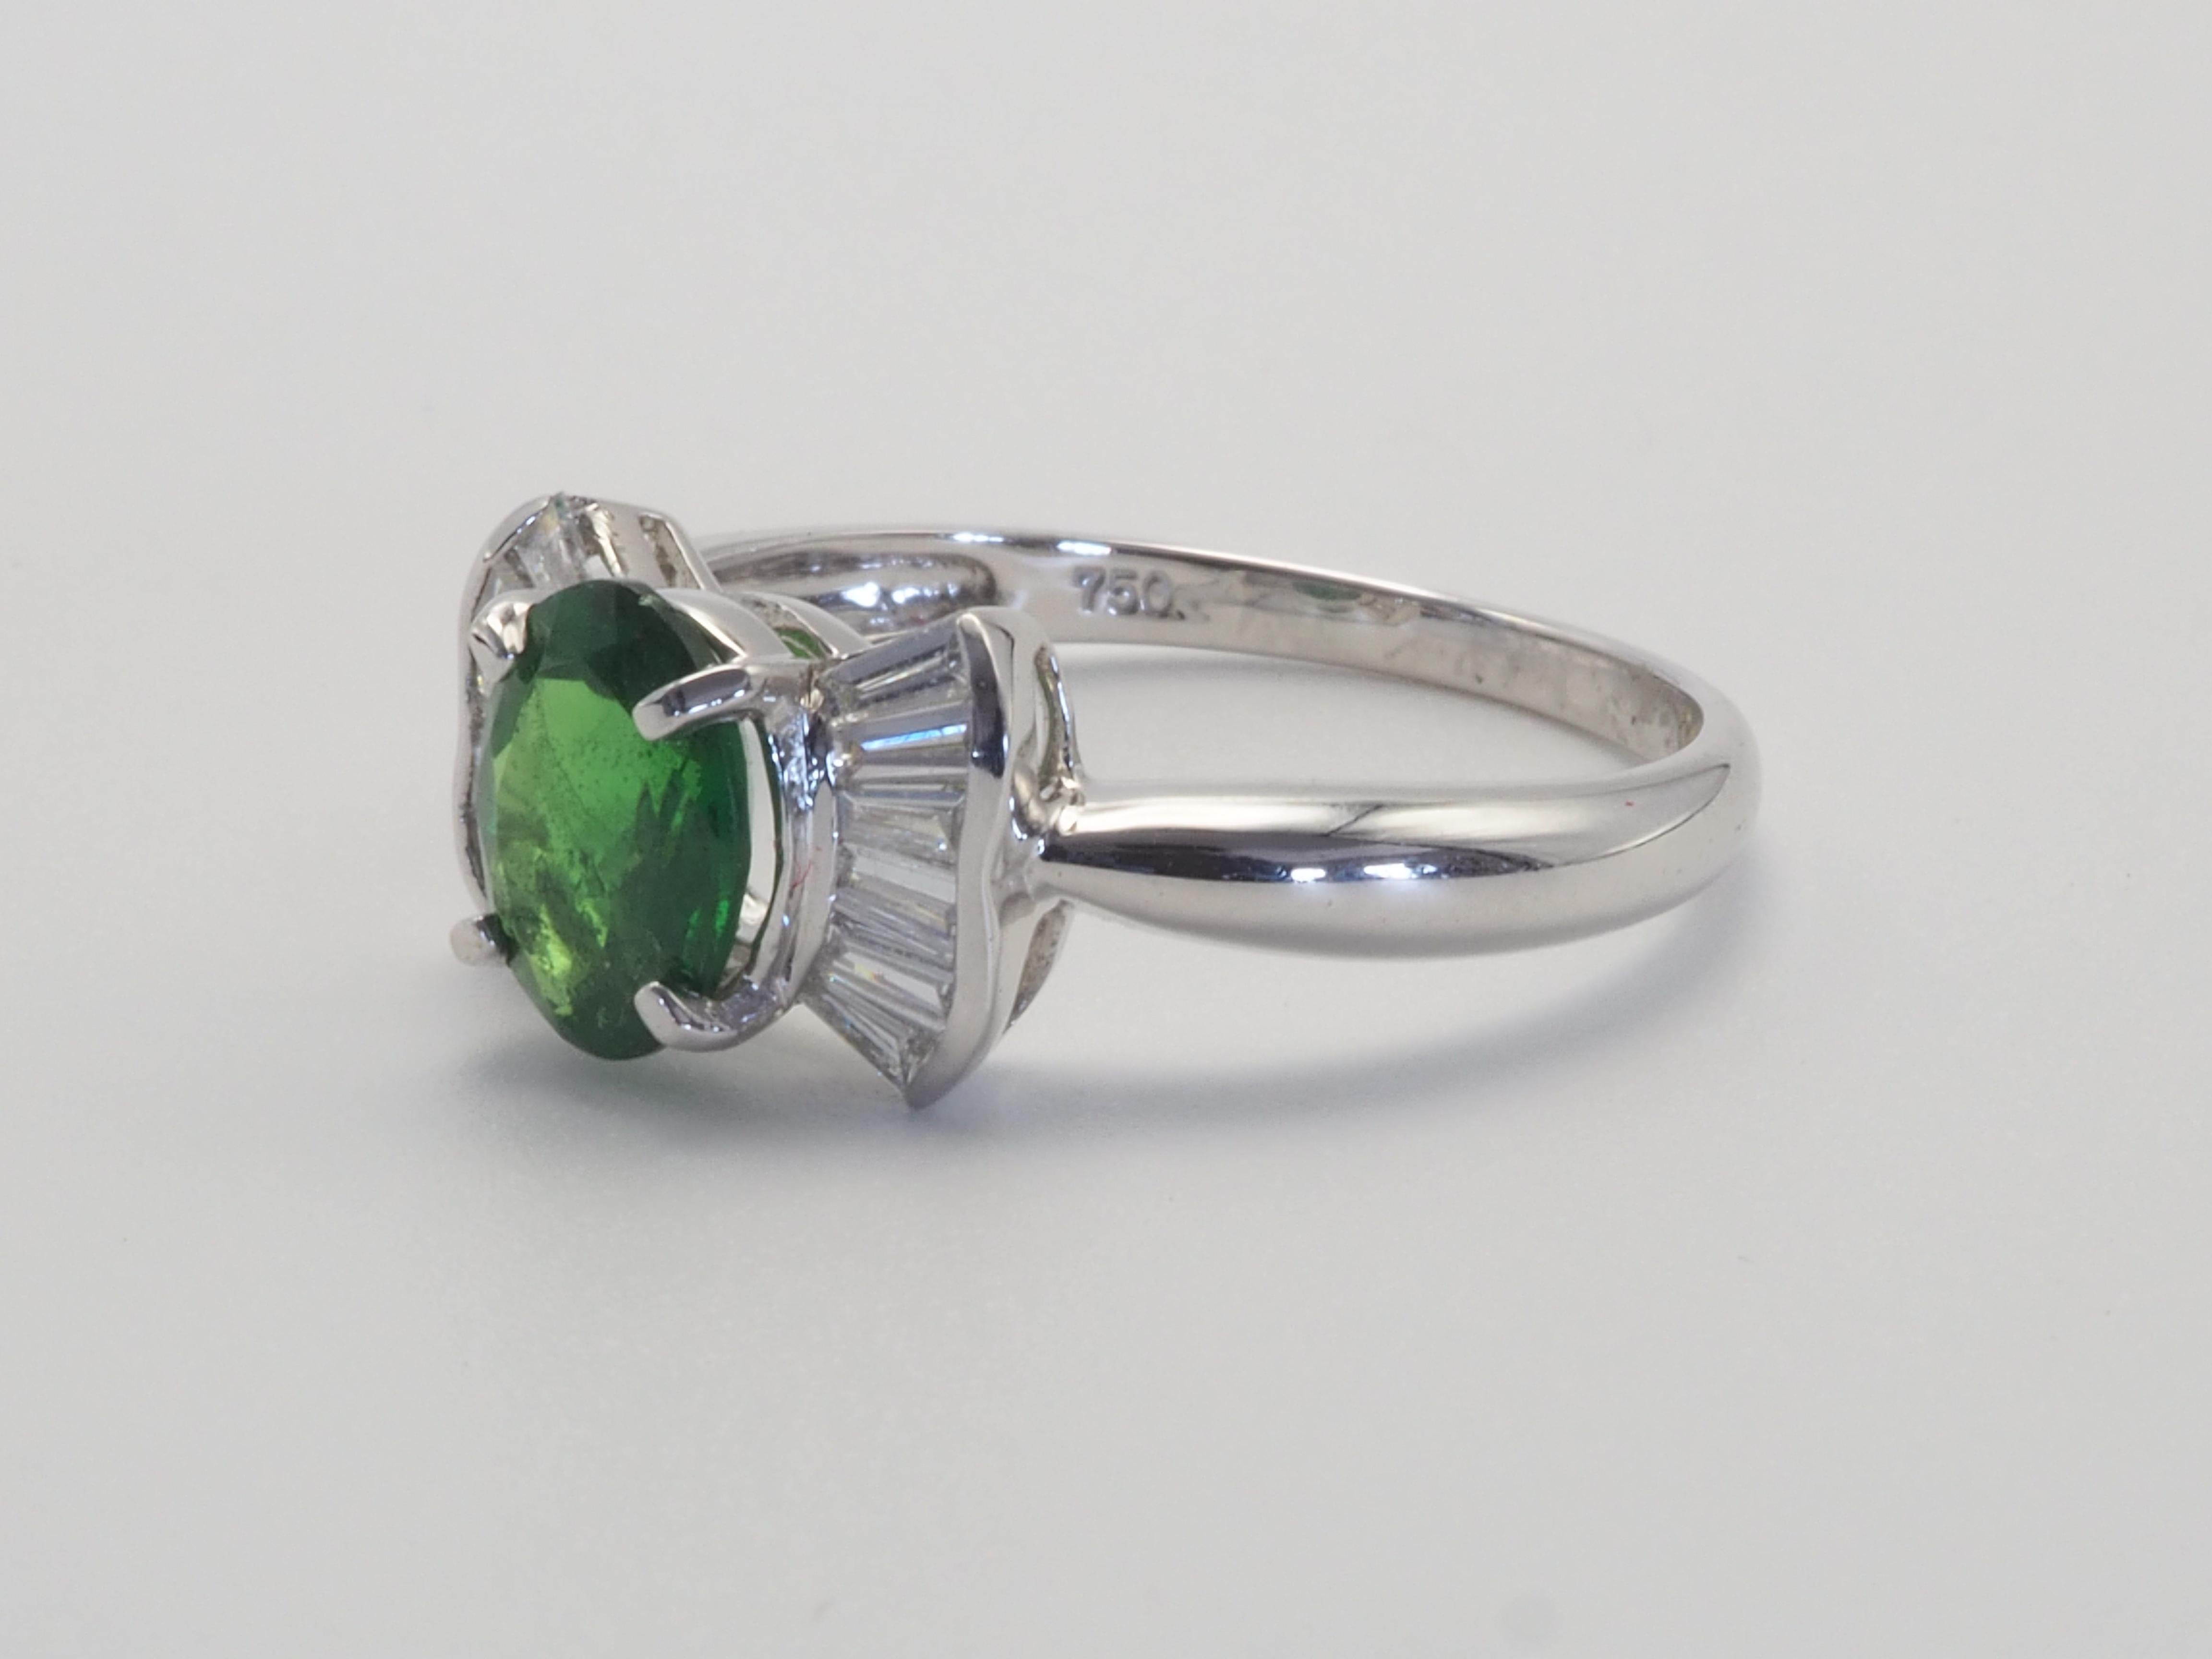 Diese schöne Fliege Ring ist perfekt für alle Frauen, vor allem für diejenigen, die refraktiven grünen Steinen liebt, wird die tsavorite lieben. Diejenigen, die grüne Steine lieben, wählen oft den berühmten Smaragd als erste Wahl, aber einige Leute